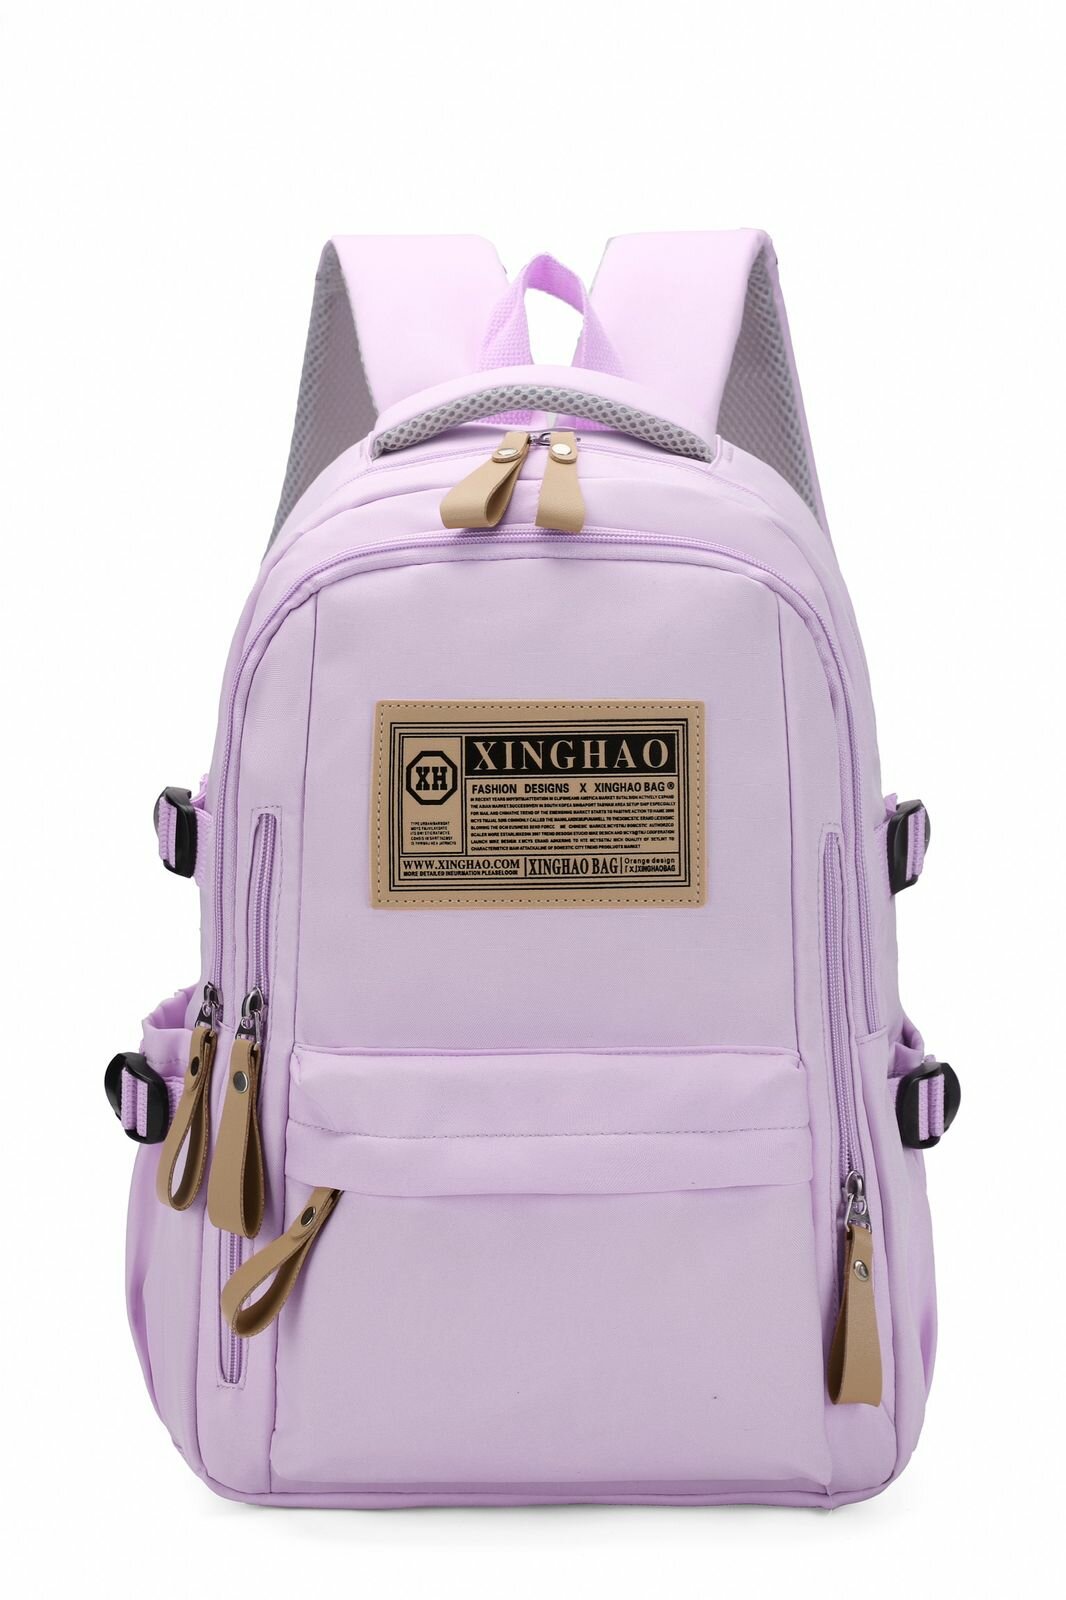 Рюкзак детский и молодежный, для школы и учебы, на работу и на прогулку, в отдых и путешествие, для мальчиков и девочек Xinghao6